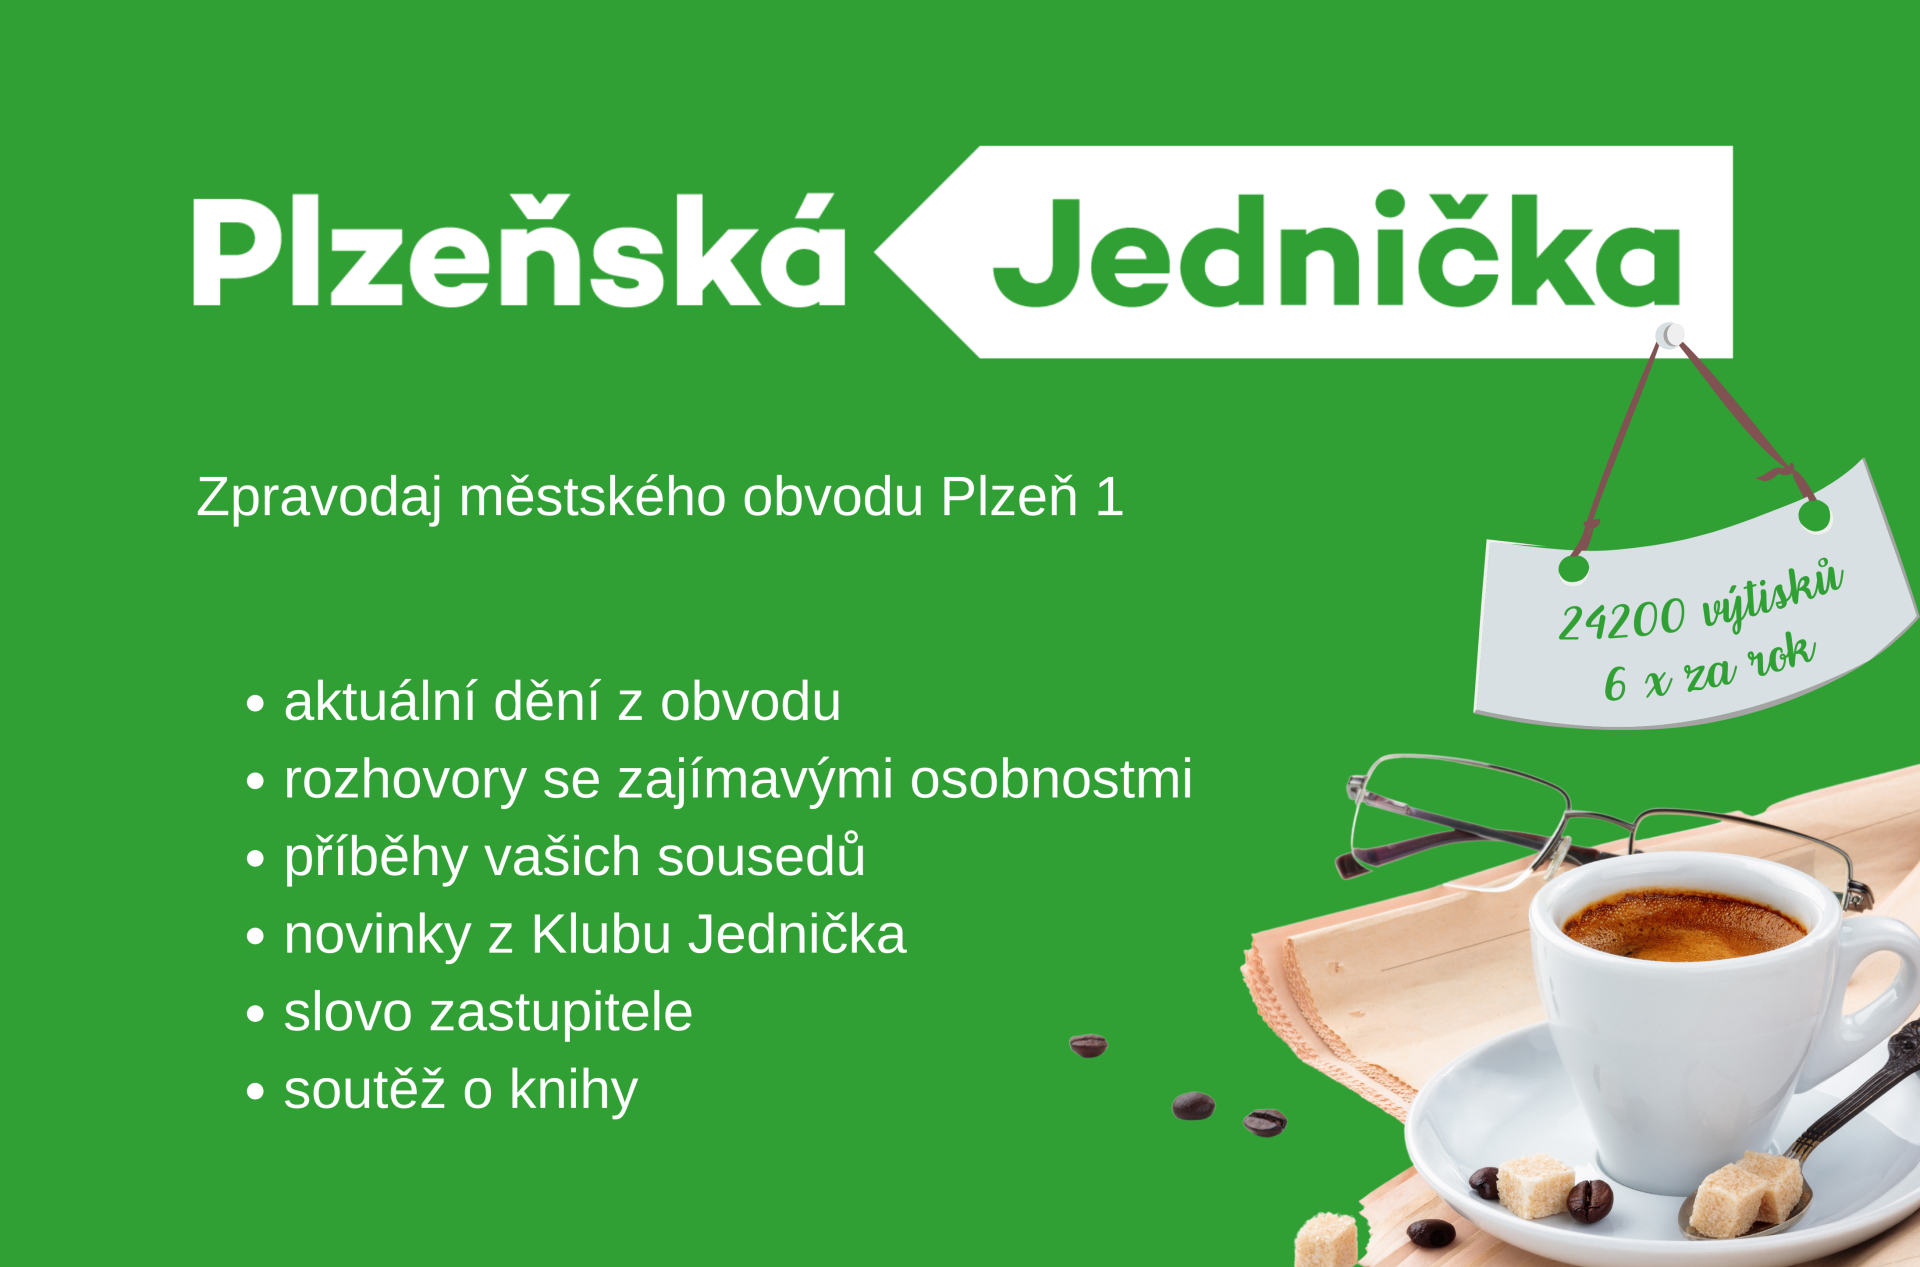 20240116_plzenska_jednicka_web_(4380 x 2890 px)